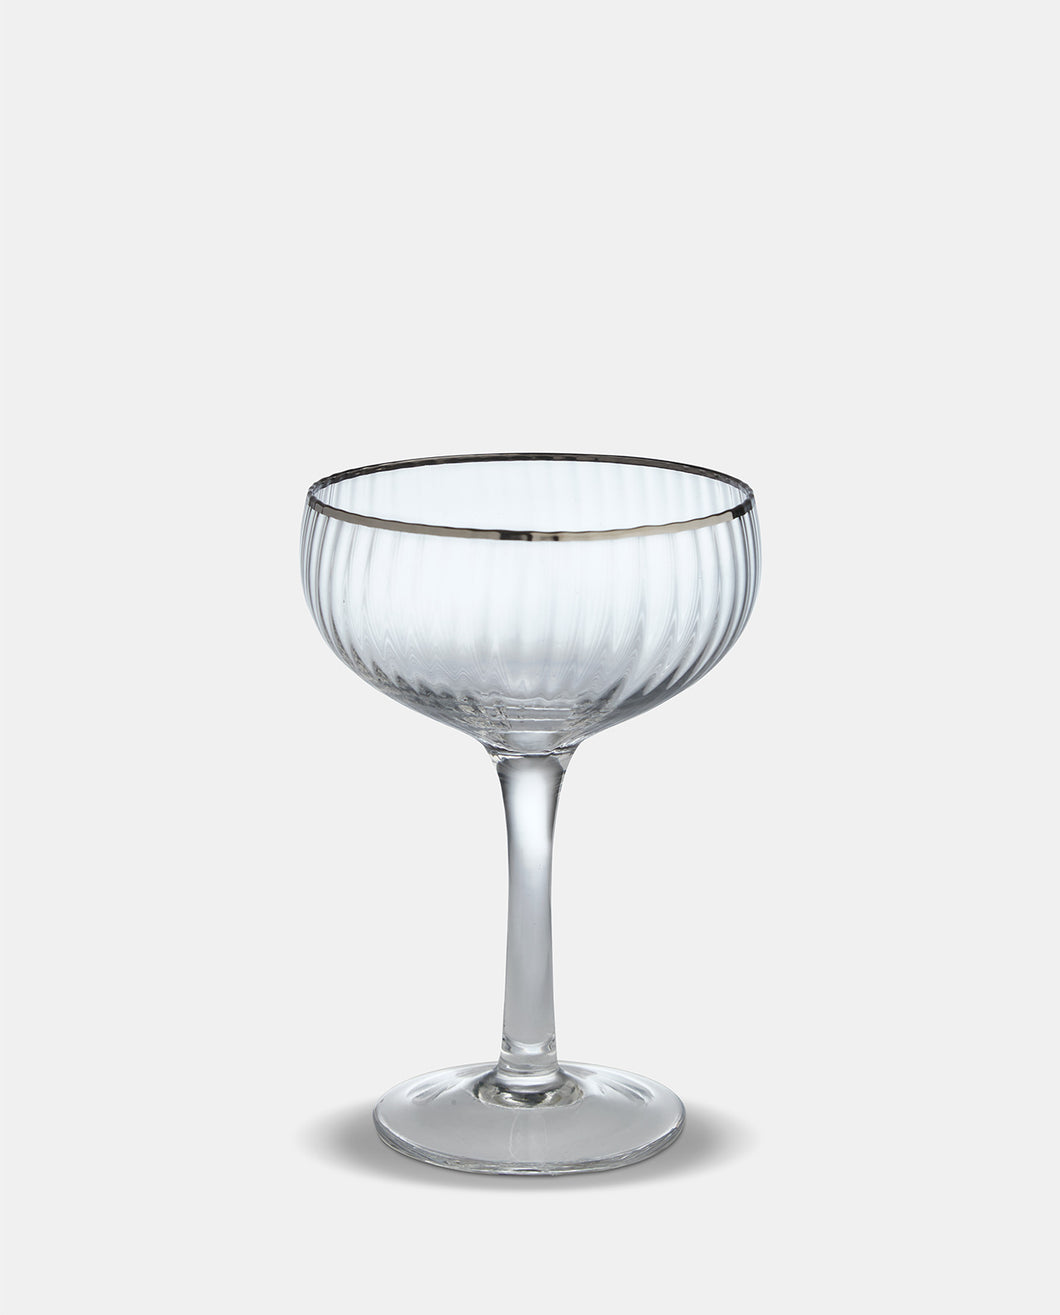 Italia Silver Rim Coupe Champagne Glasses